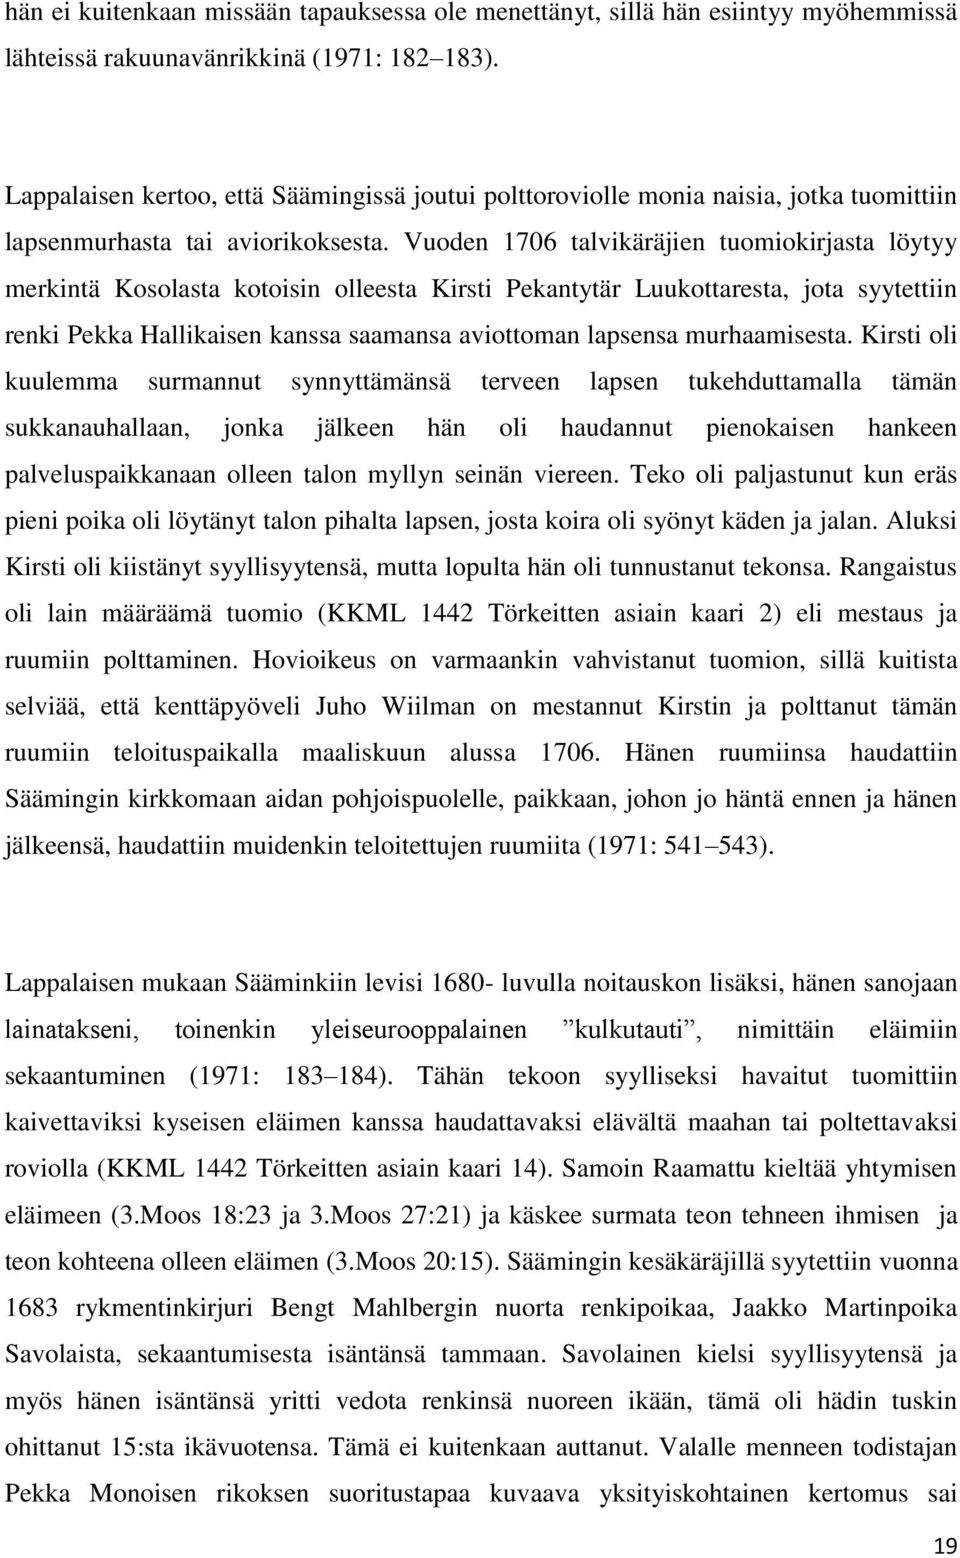 Vuoden 1706 talvikäräjien tuomiokirjasta löytyy merkintä Kosolasta kotoisin olleesta Kirsti Pekantytär Luukottaresta, jota syytettiin renki Pekka Hallikaisen kanssa saamansa aviottoman lapsensa